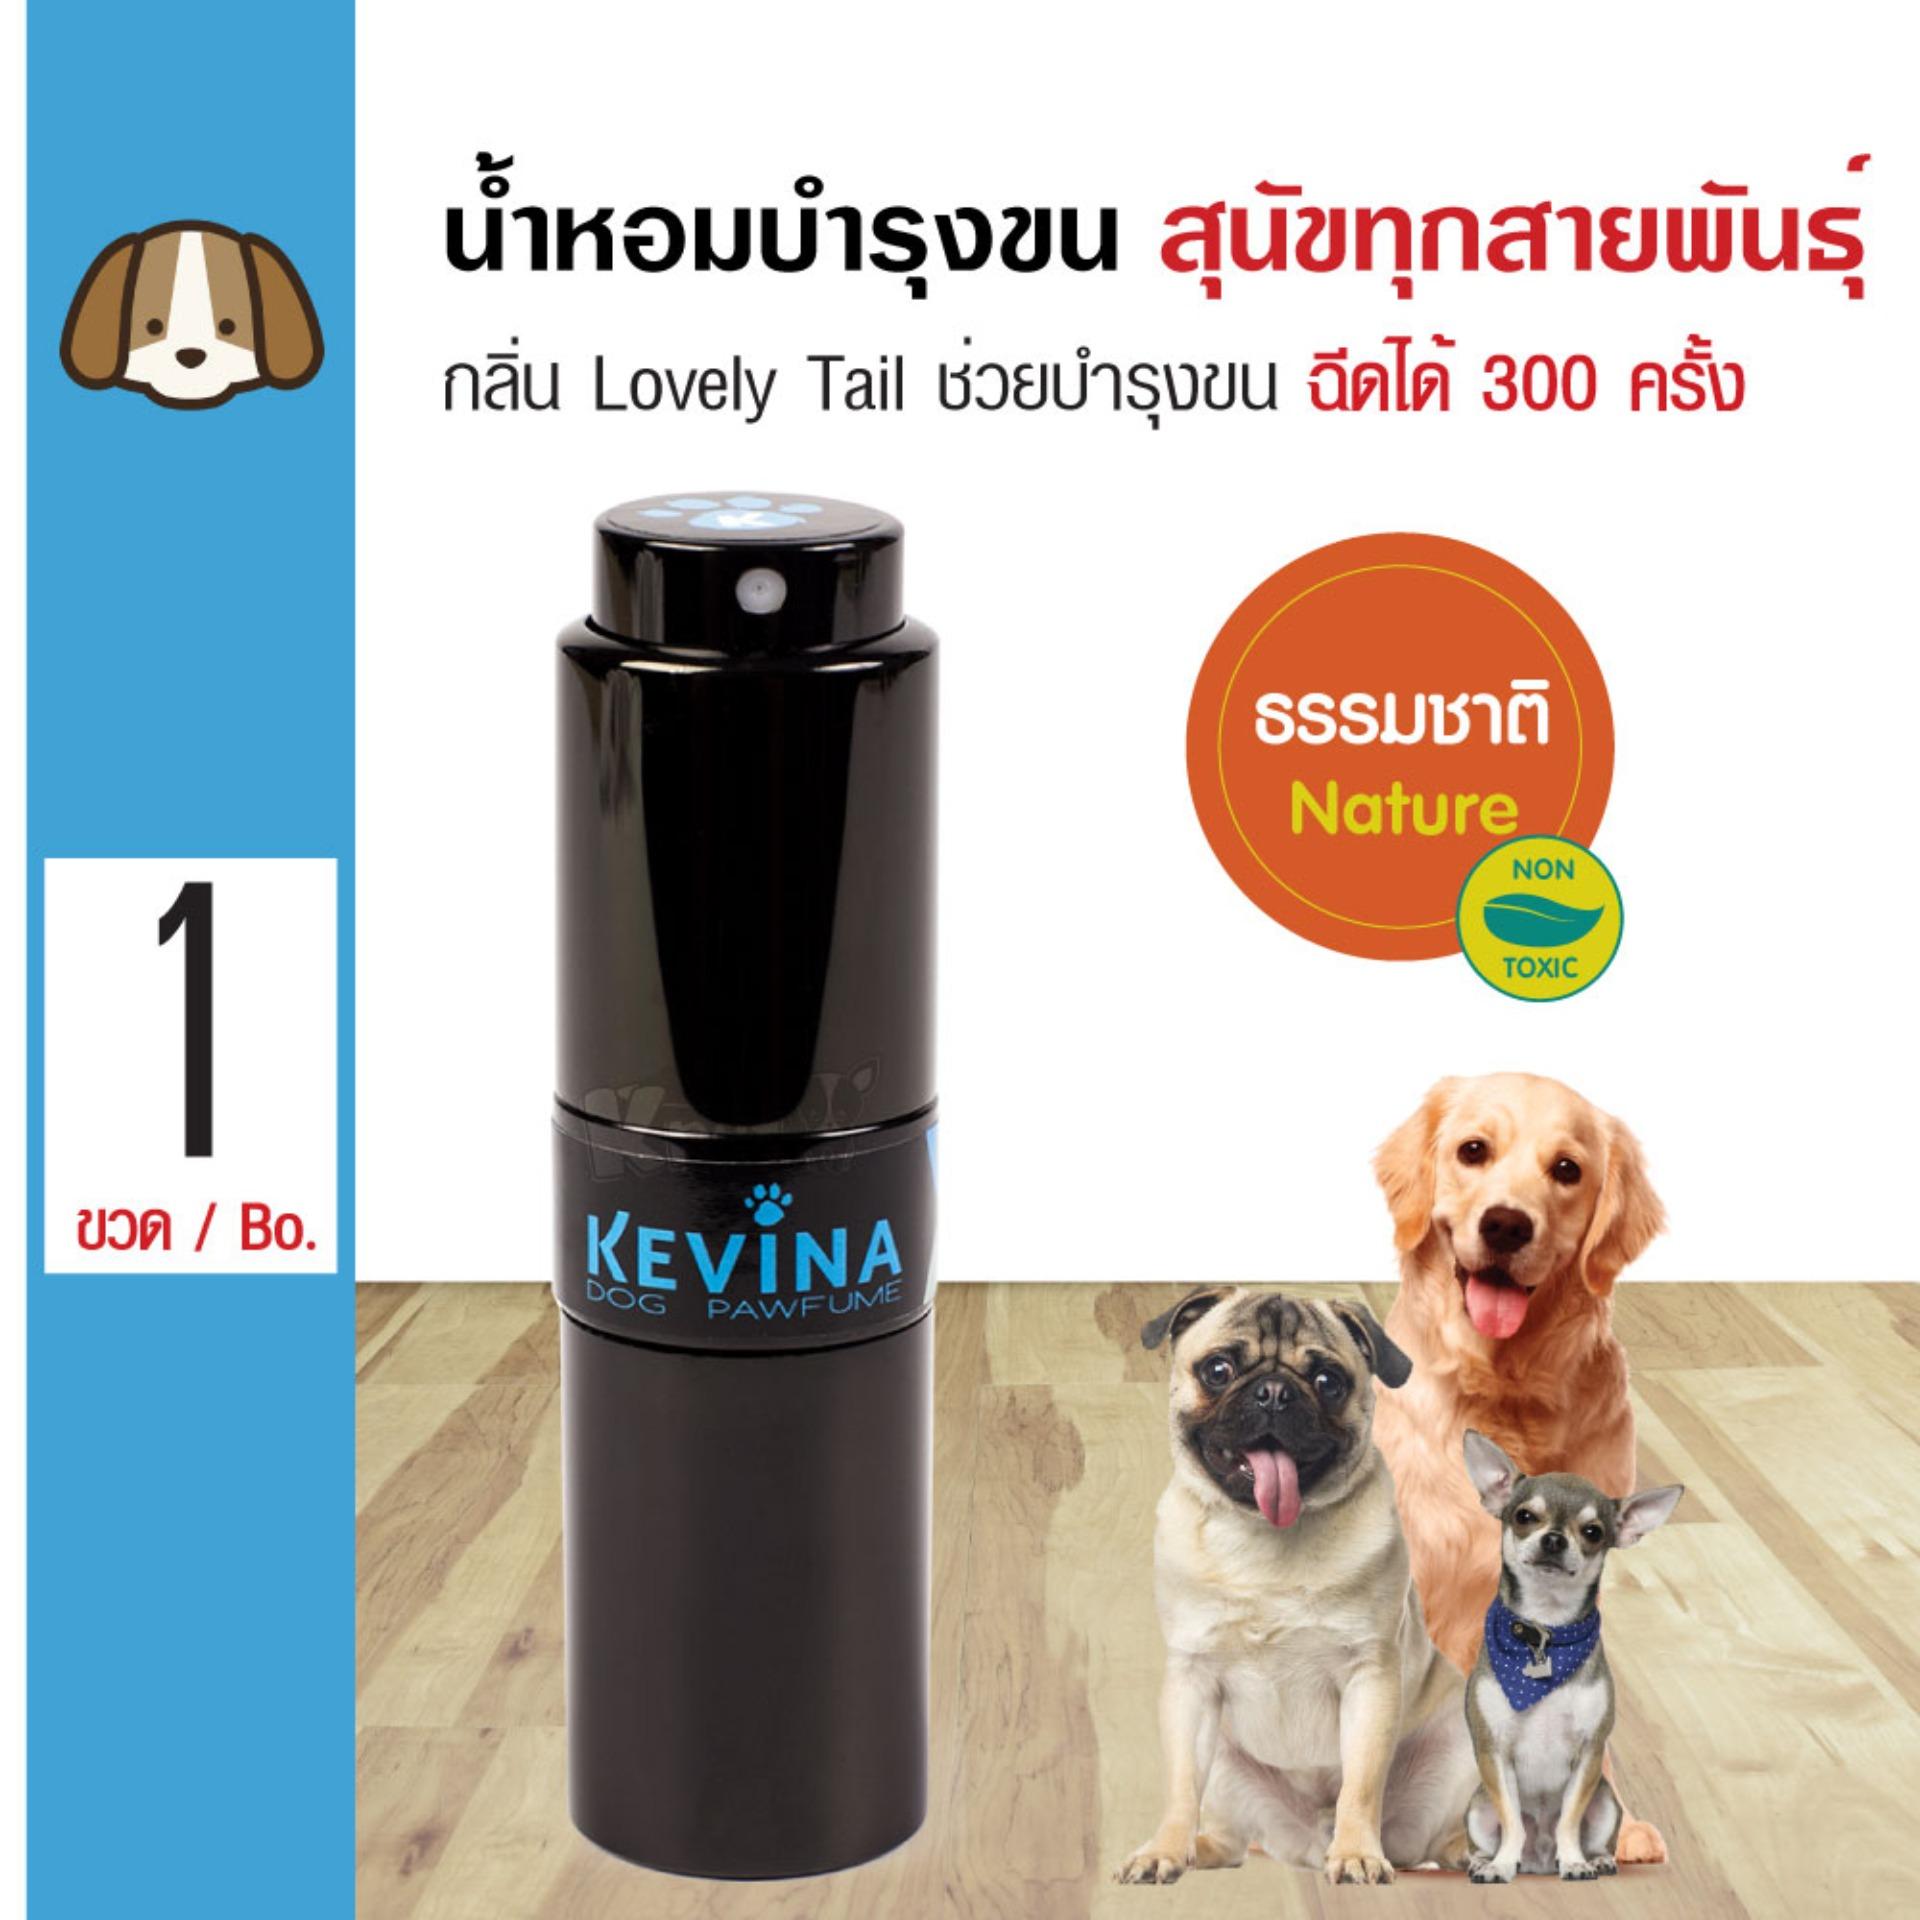 Kevina Dog Perfume น้ำหอมสุนัข น้ำมันบำรุงขน กลิ่น Lovely Tail สำหรับสุนัขทุกสายพันธุ์ (ฉีดได้ 300 ครั้ง)